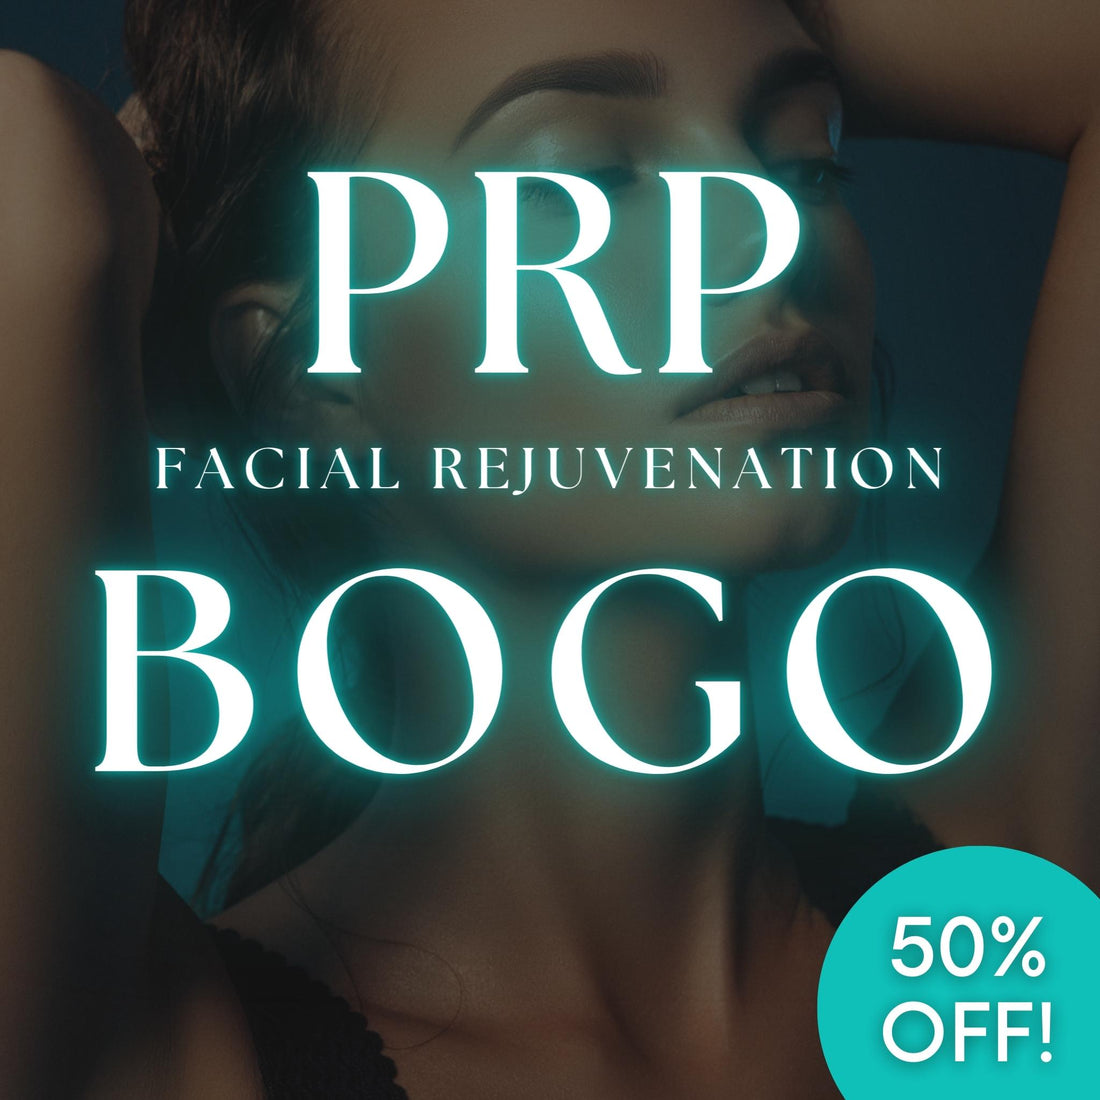 BOGO PRP Face Treatments